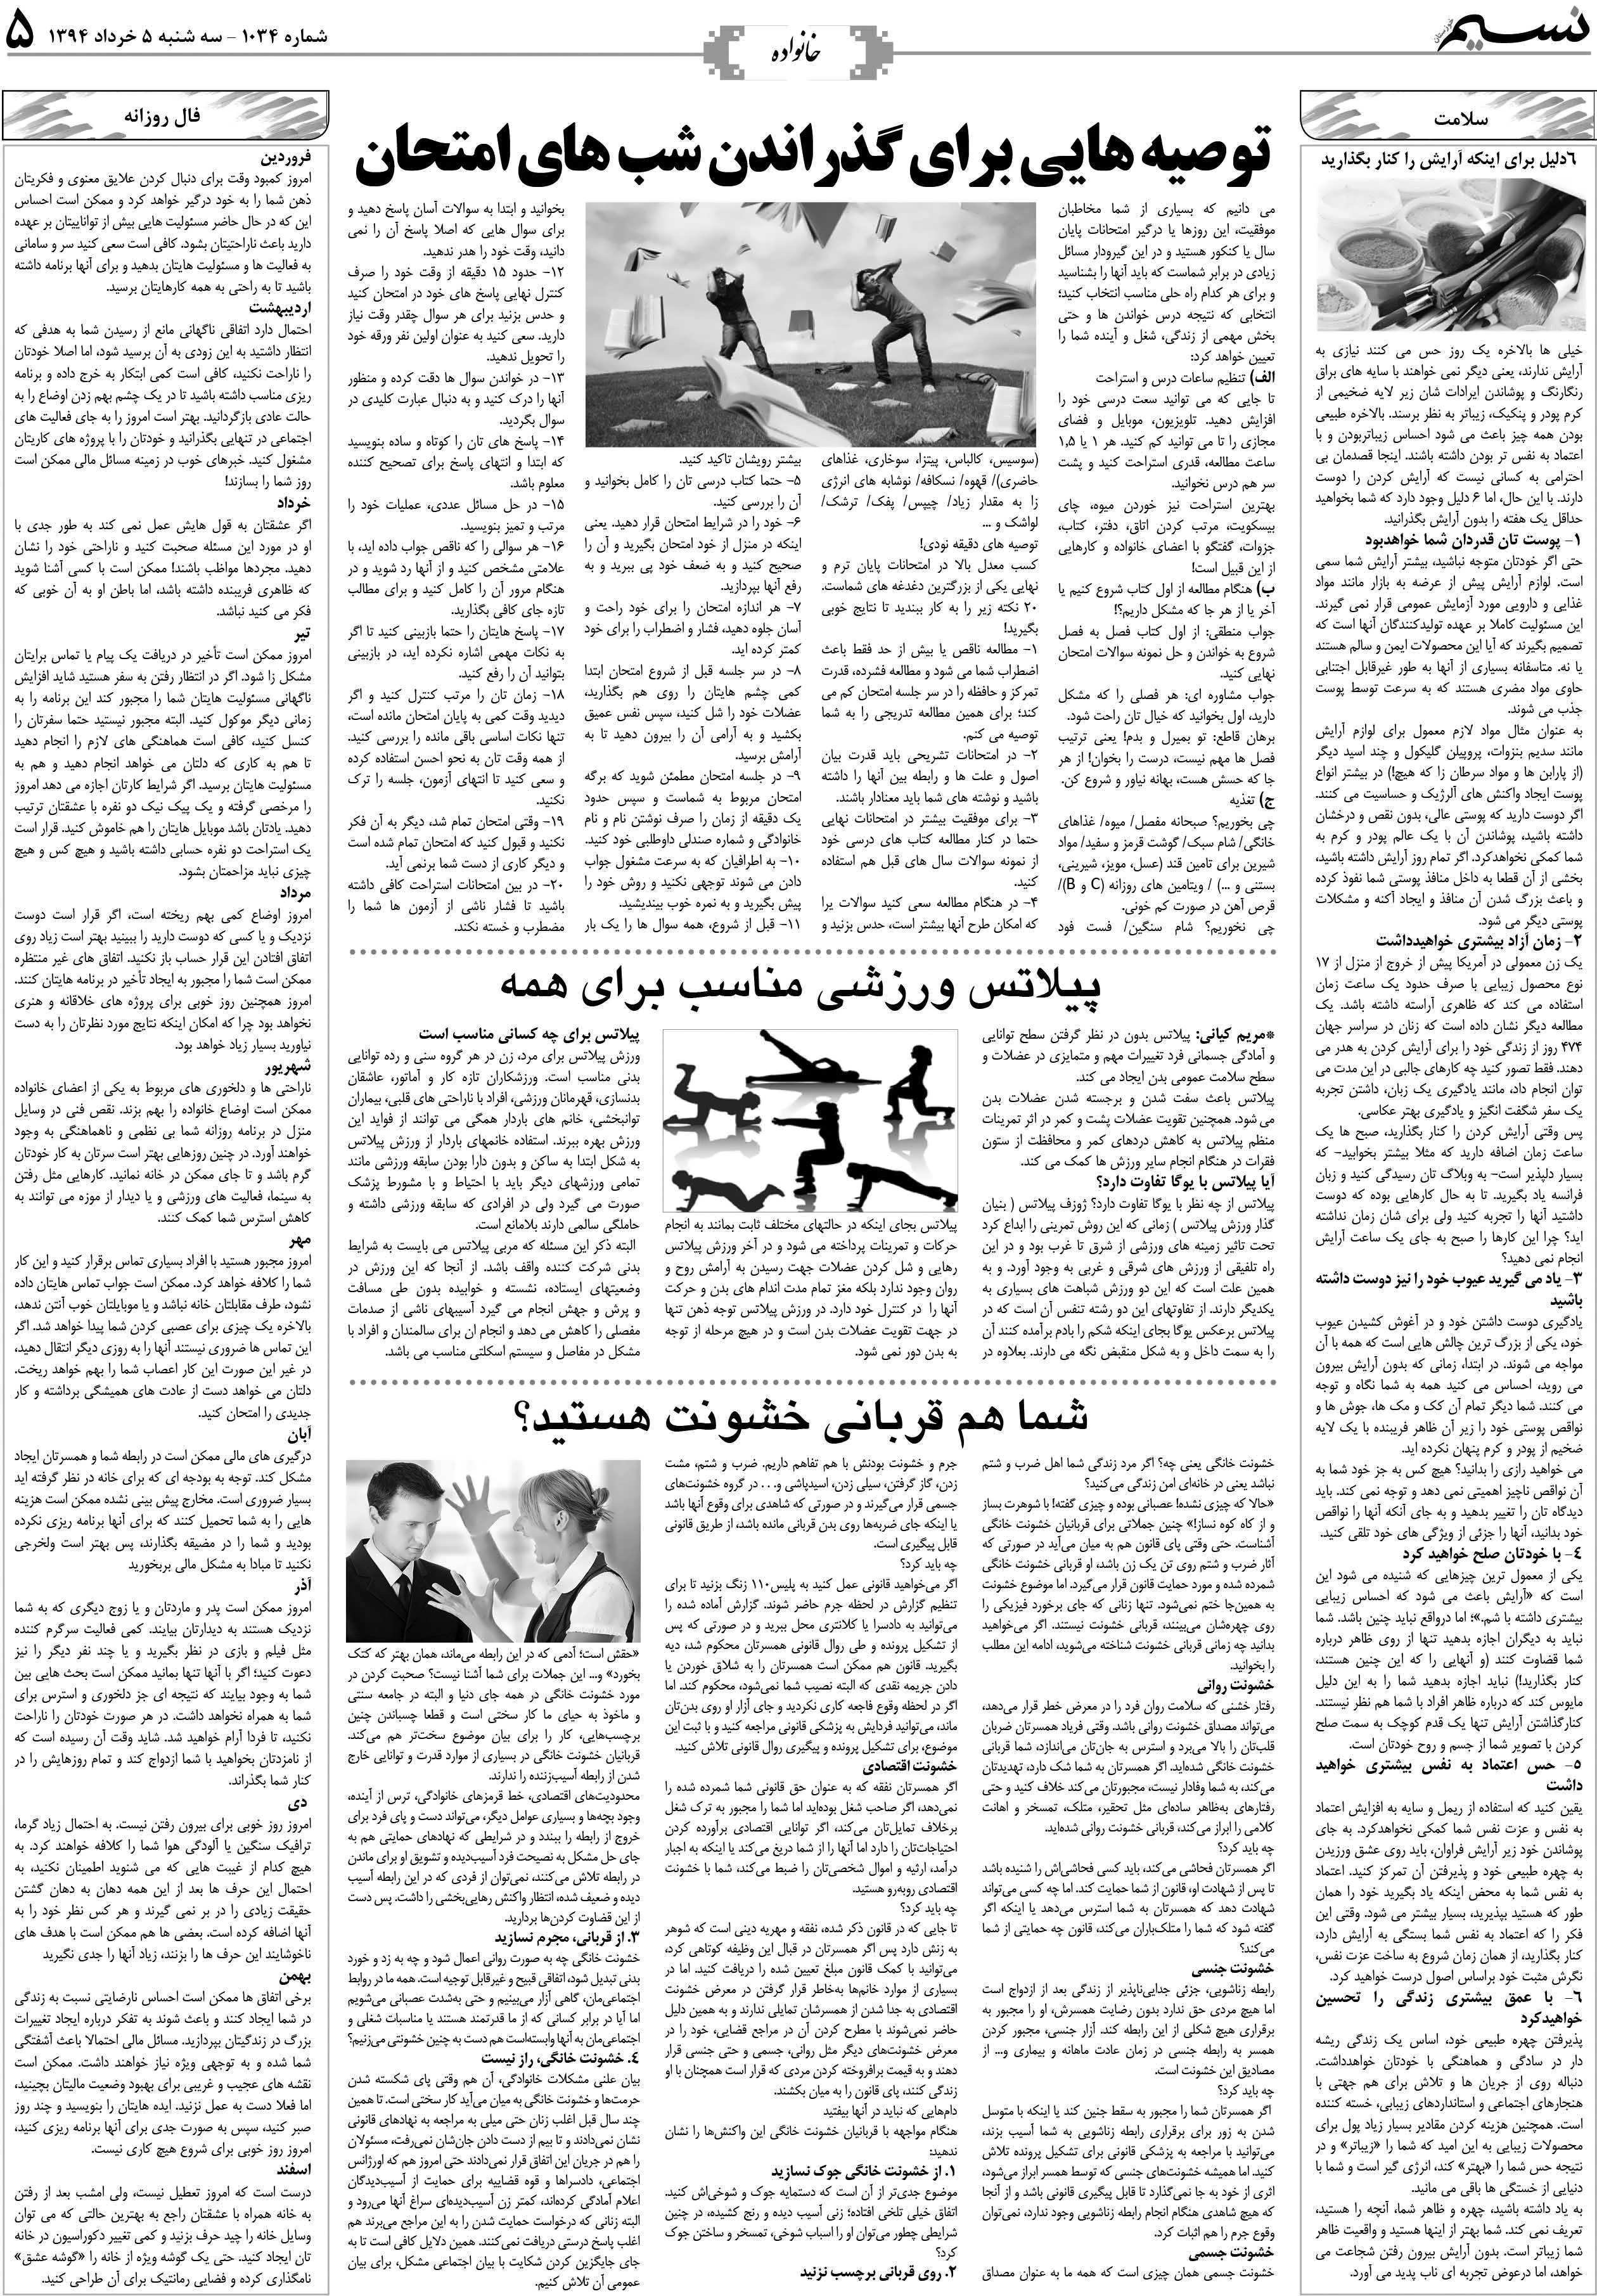 صفحه خانواده روزنامه نسیم شماره 1034